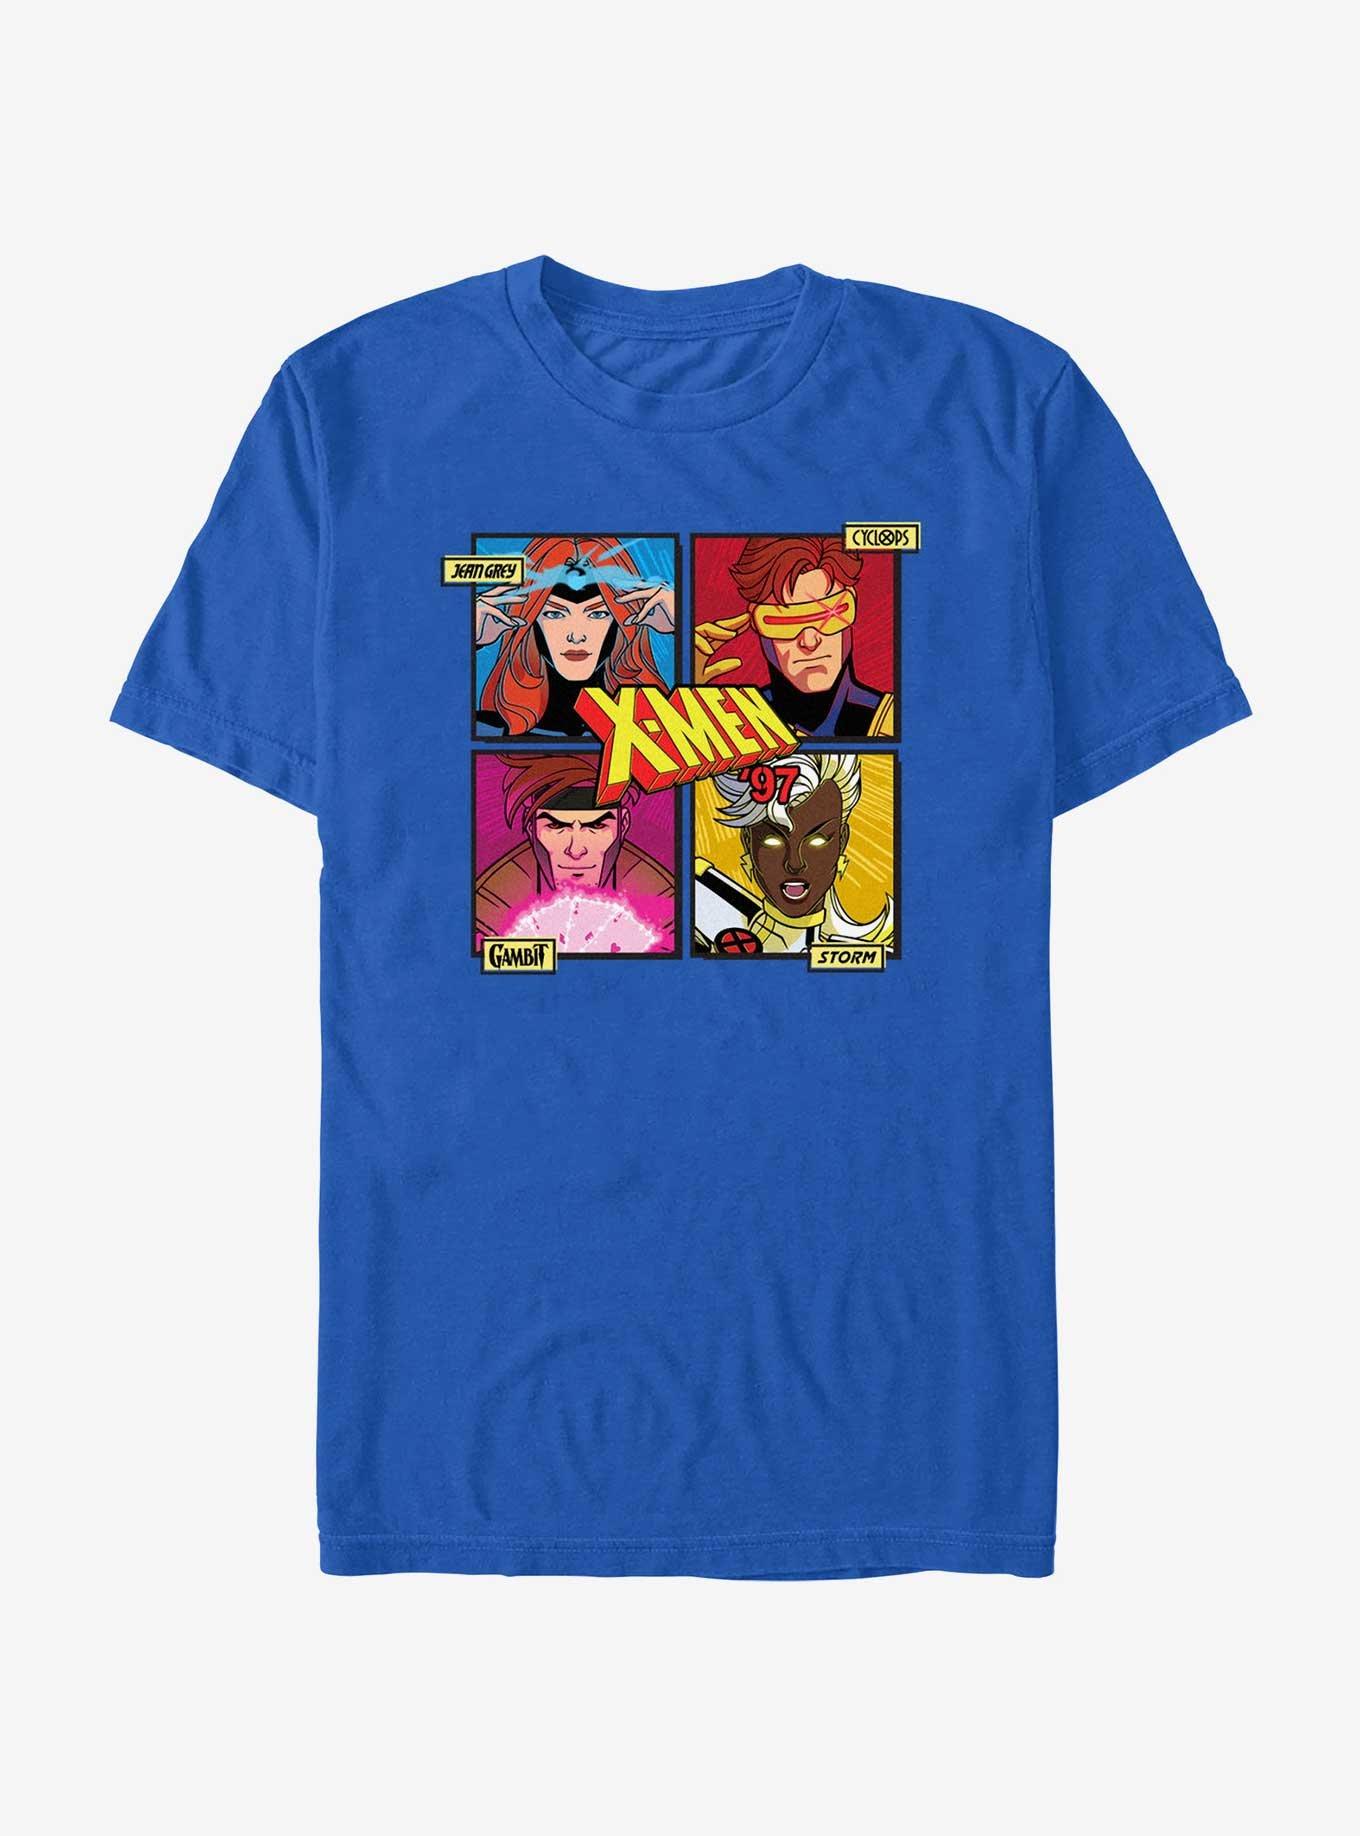 Marvel X-Men '97 Jean Cyclops Cambit Storm T-Shirt, ROYAL, hi-res